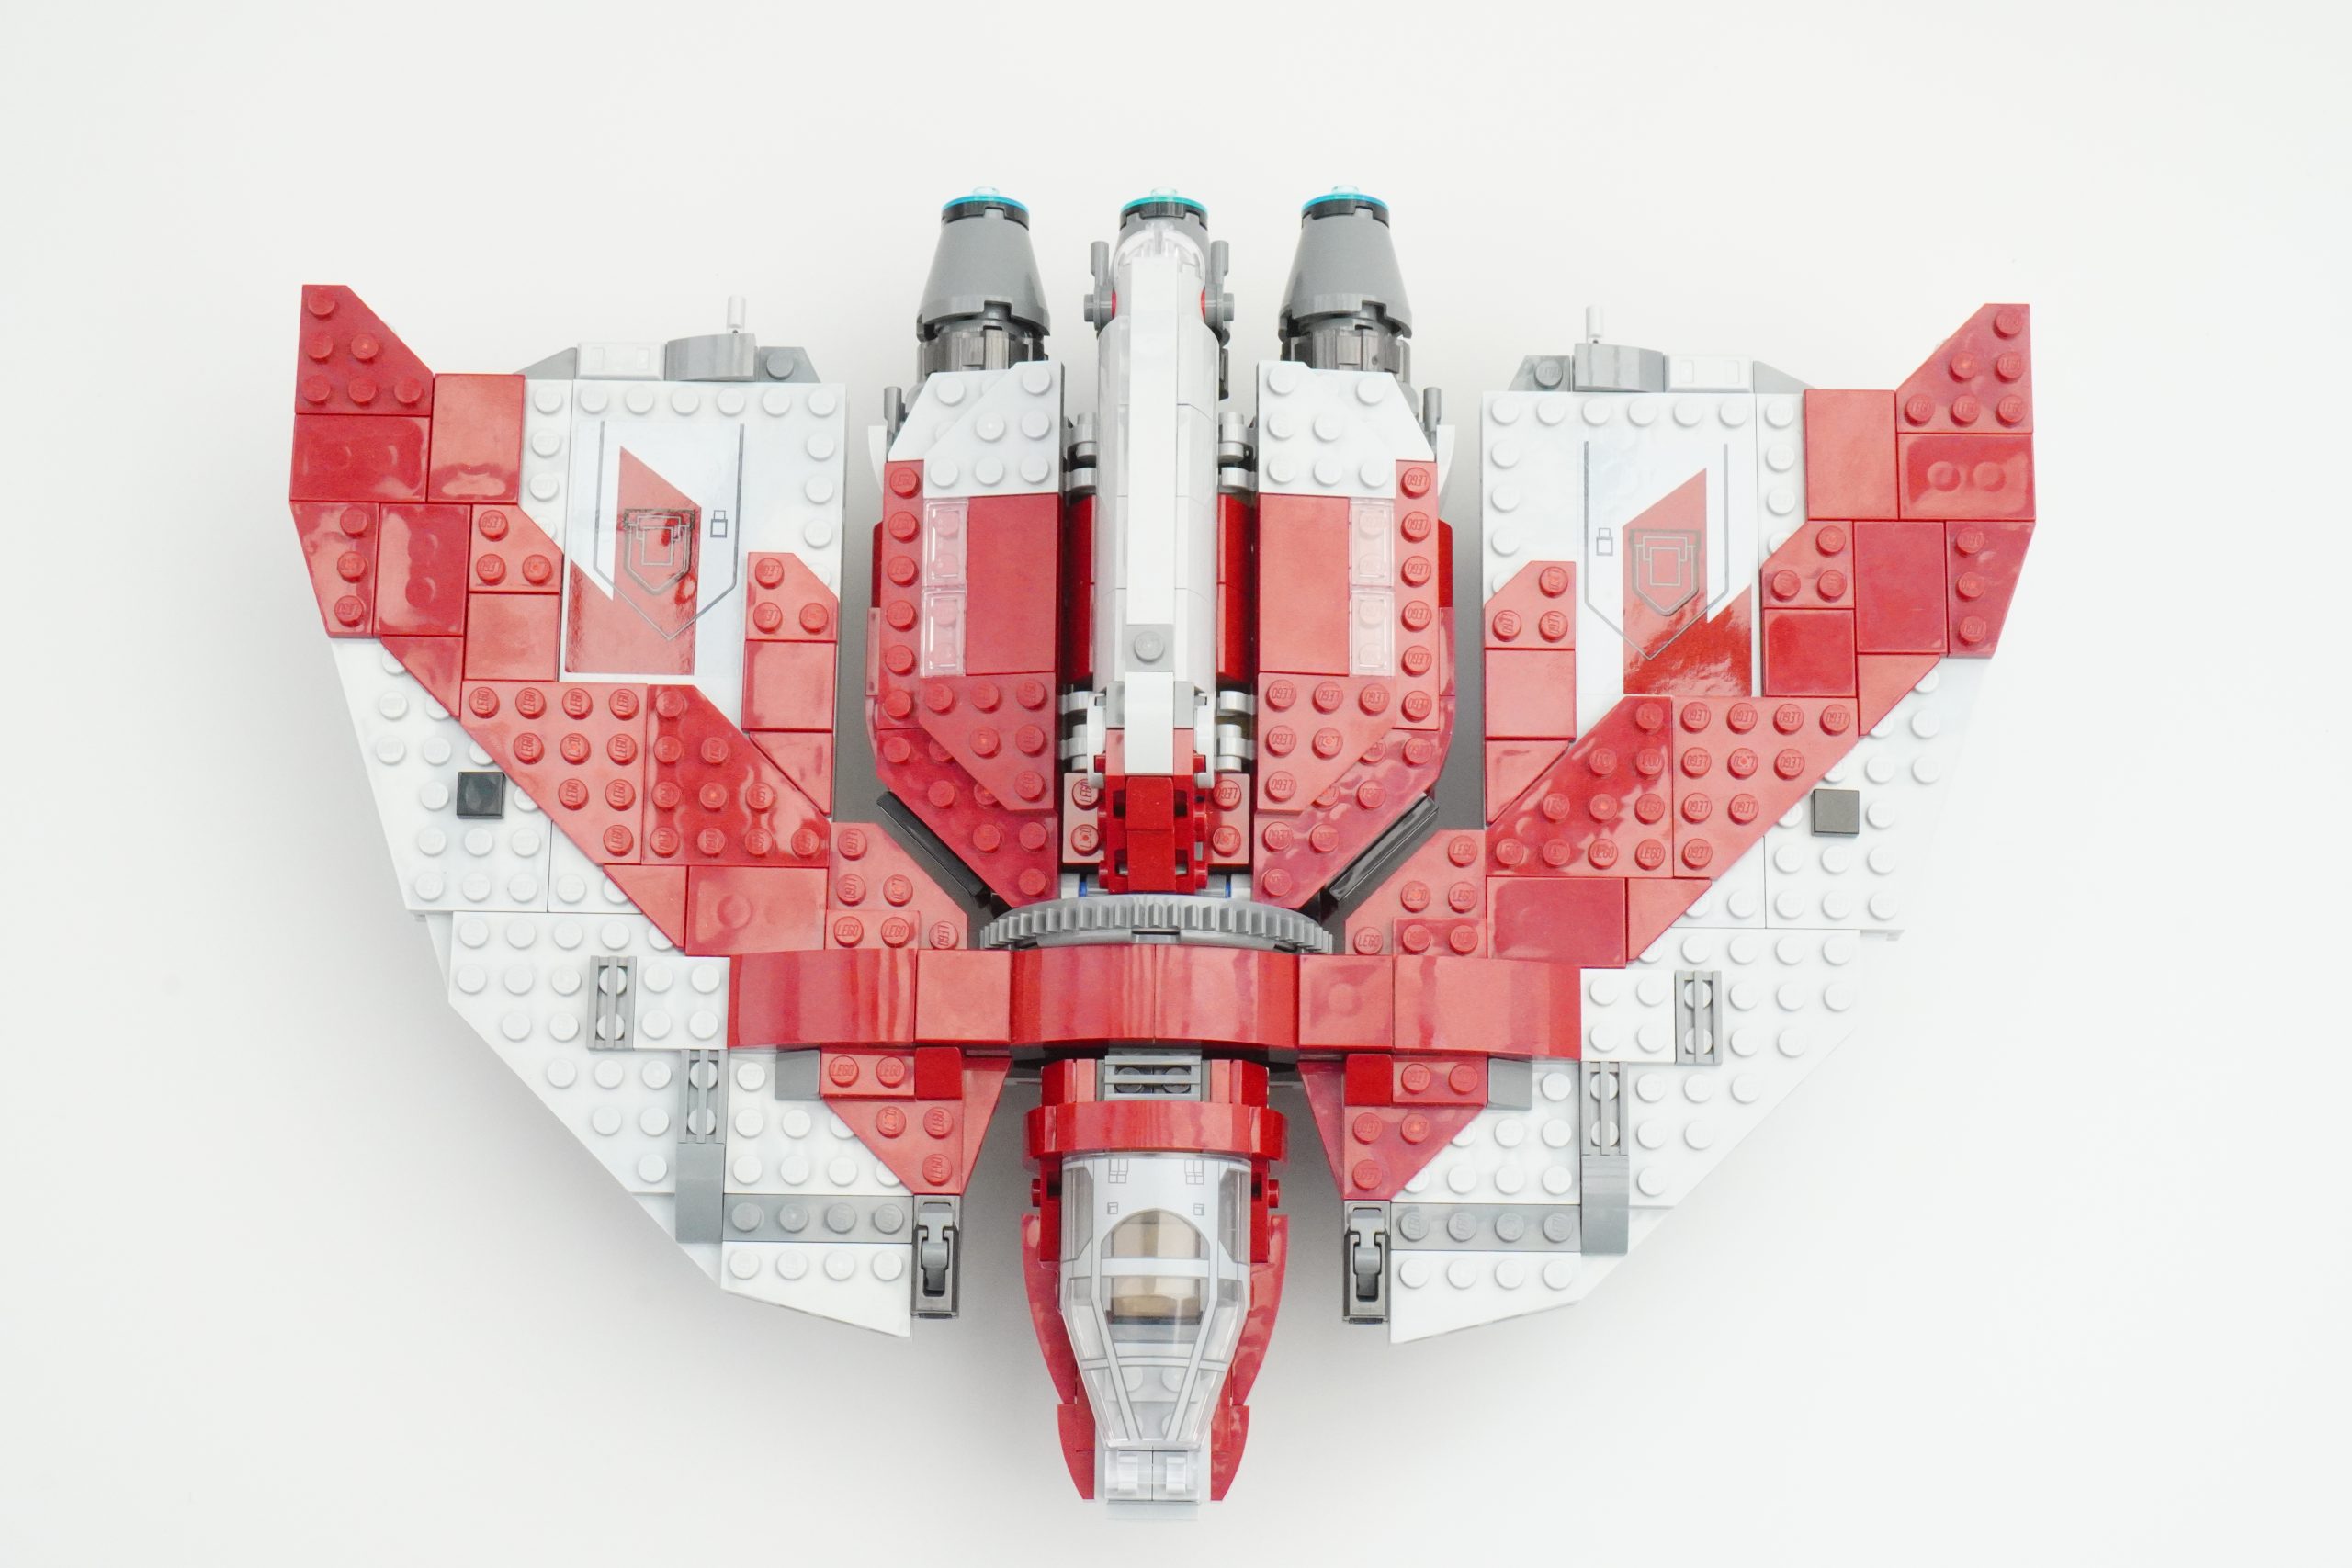 LEGO 75362 Jedi T-6 Shuttle MOC part 1 